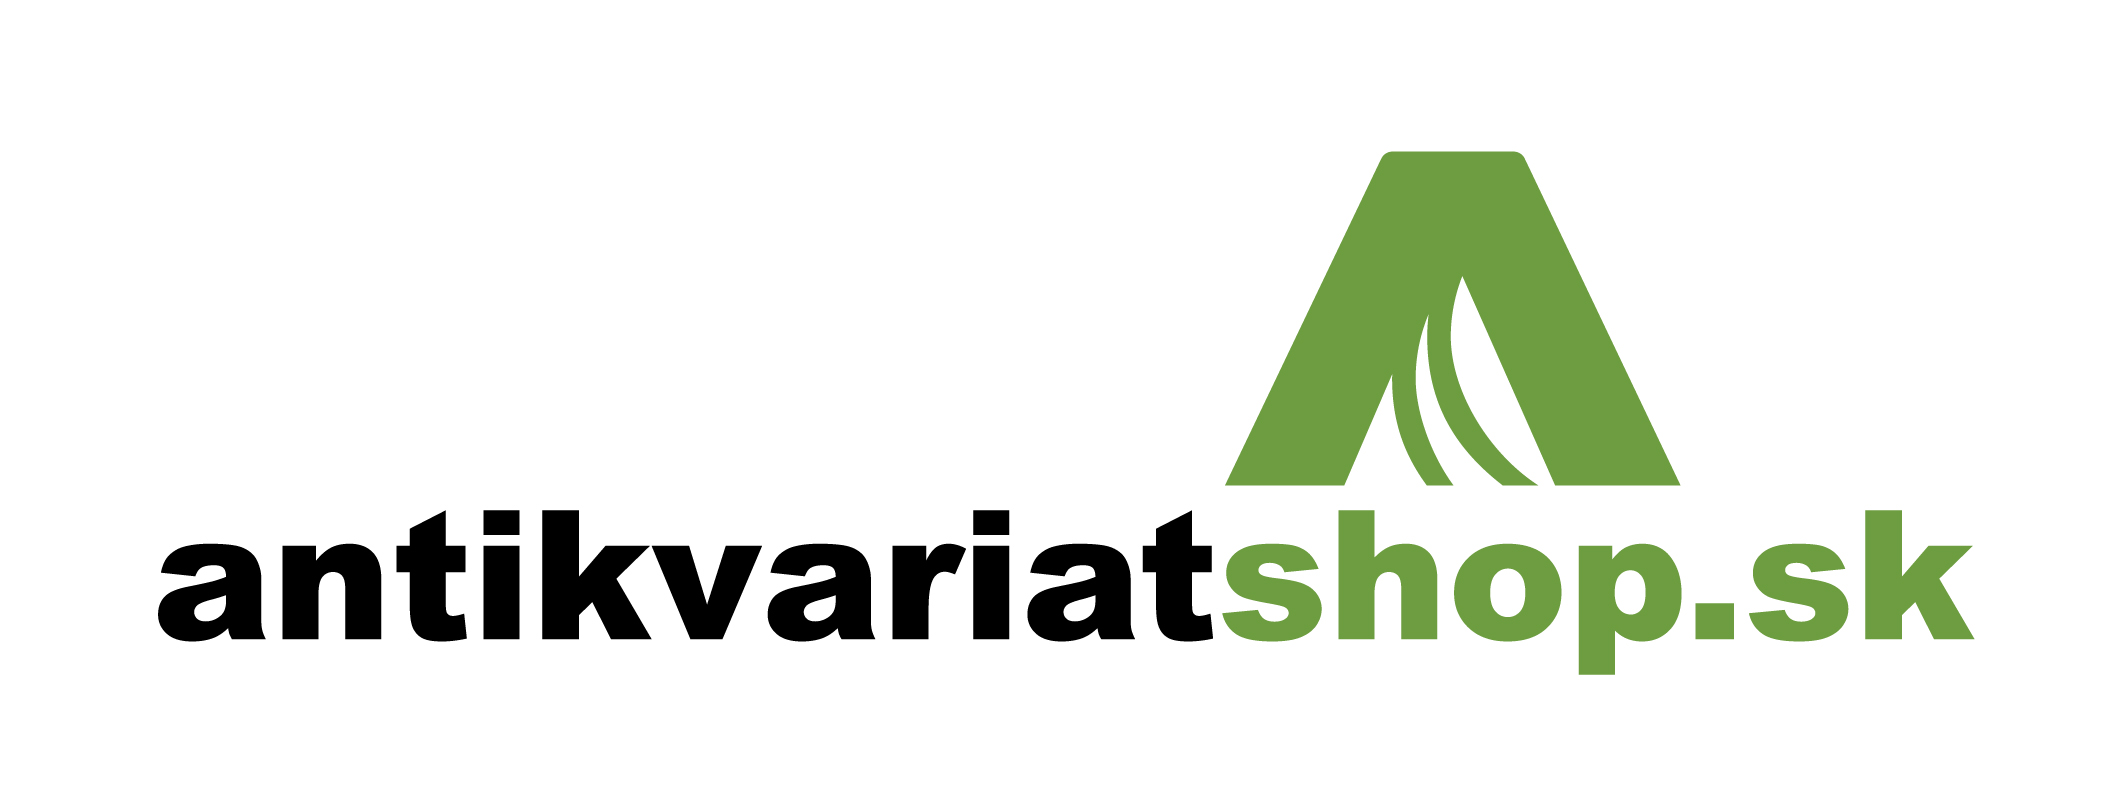 Oficialne logo antikvariatu